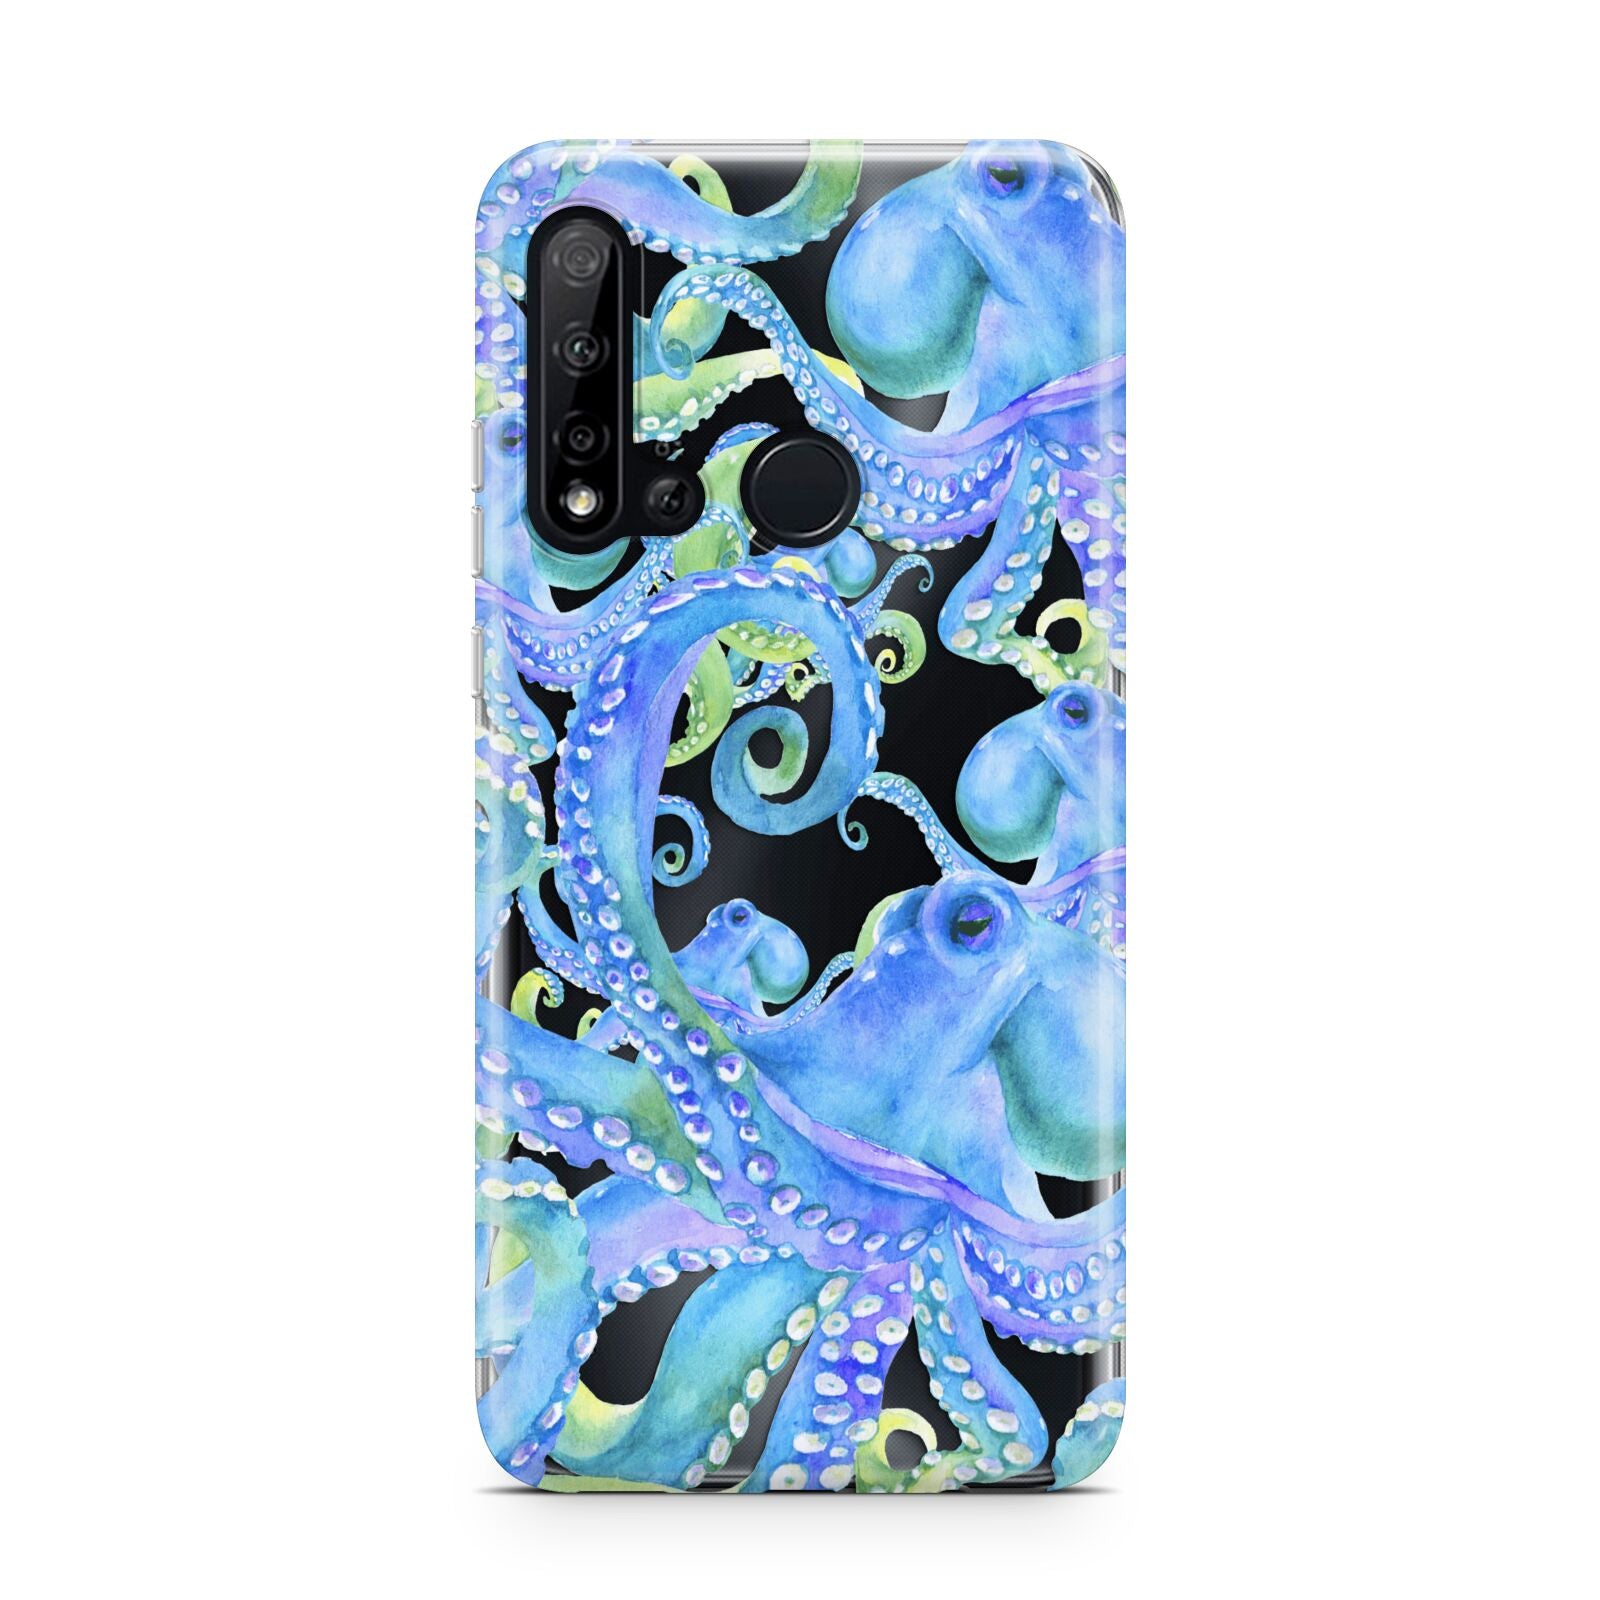 Octopus Huawei P20 Lite 5G Phone Case